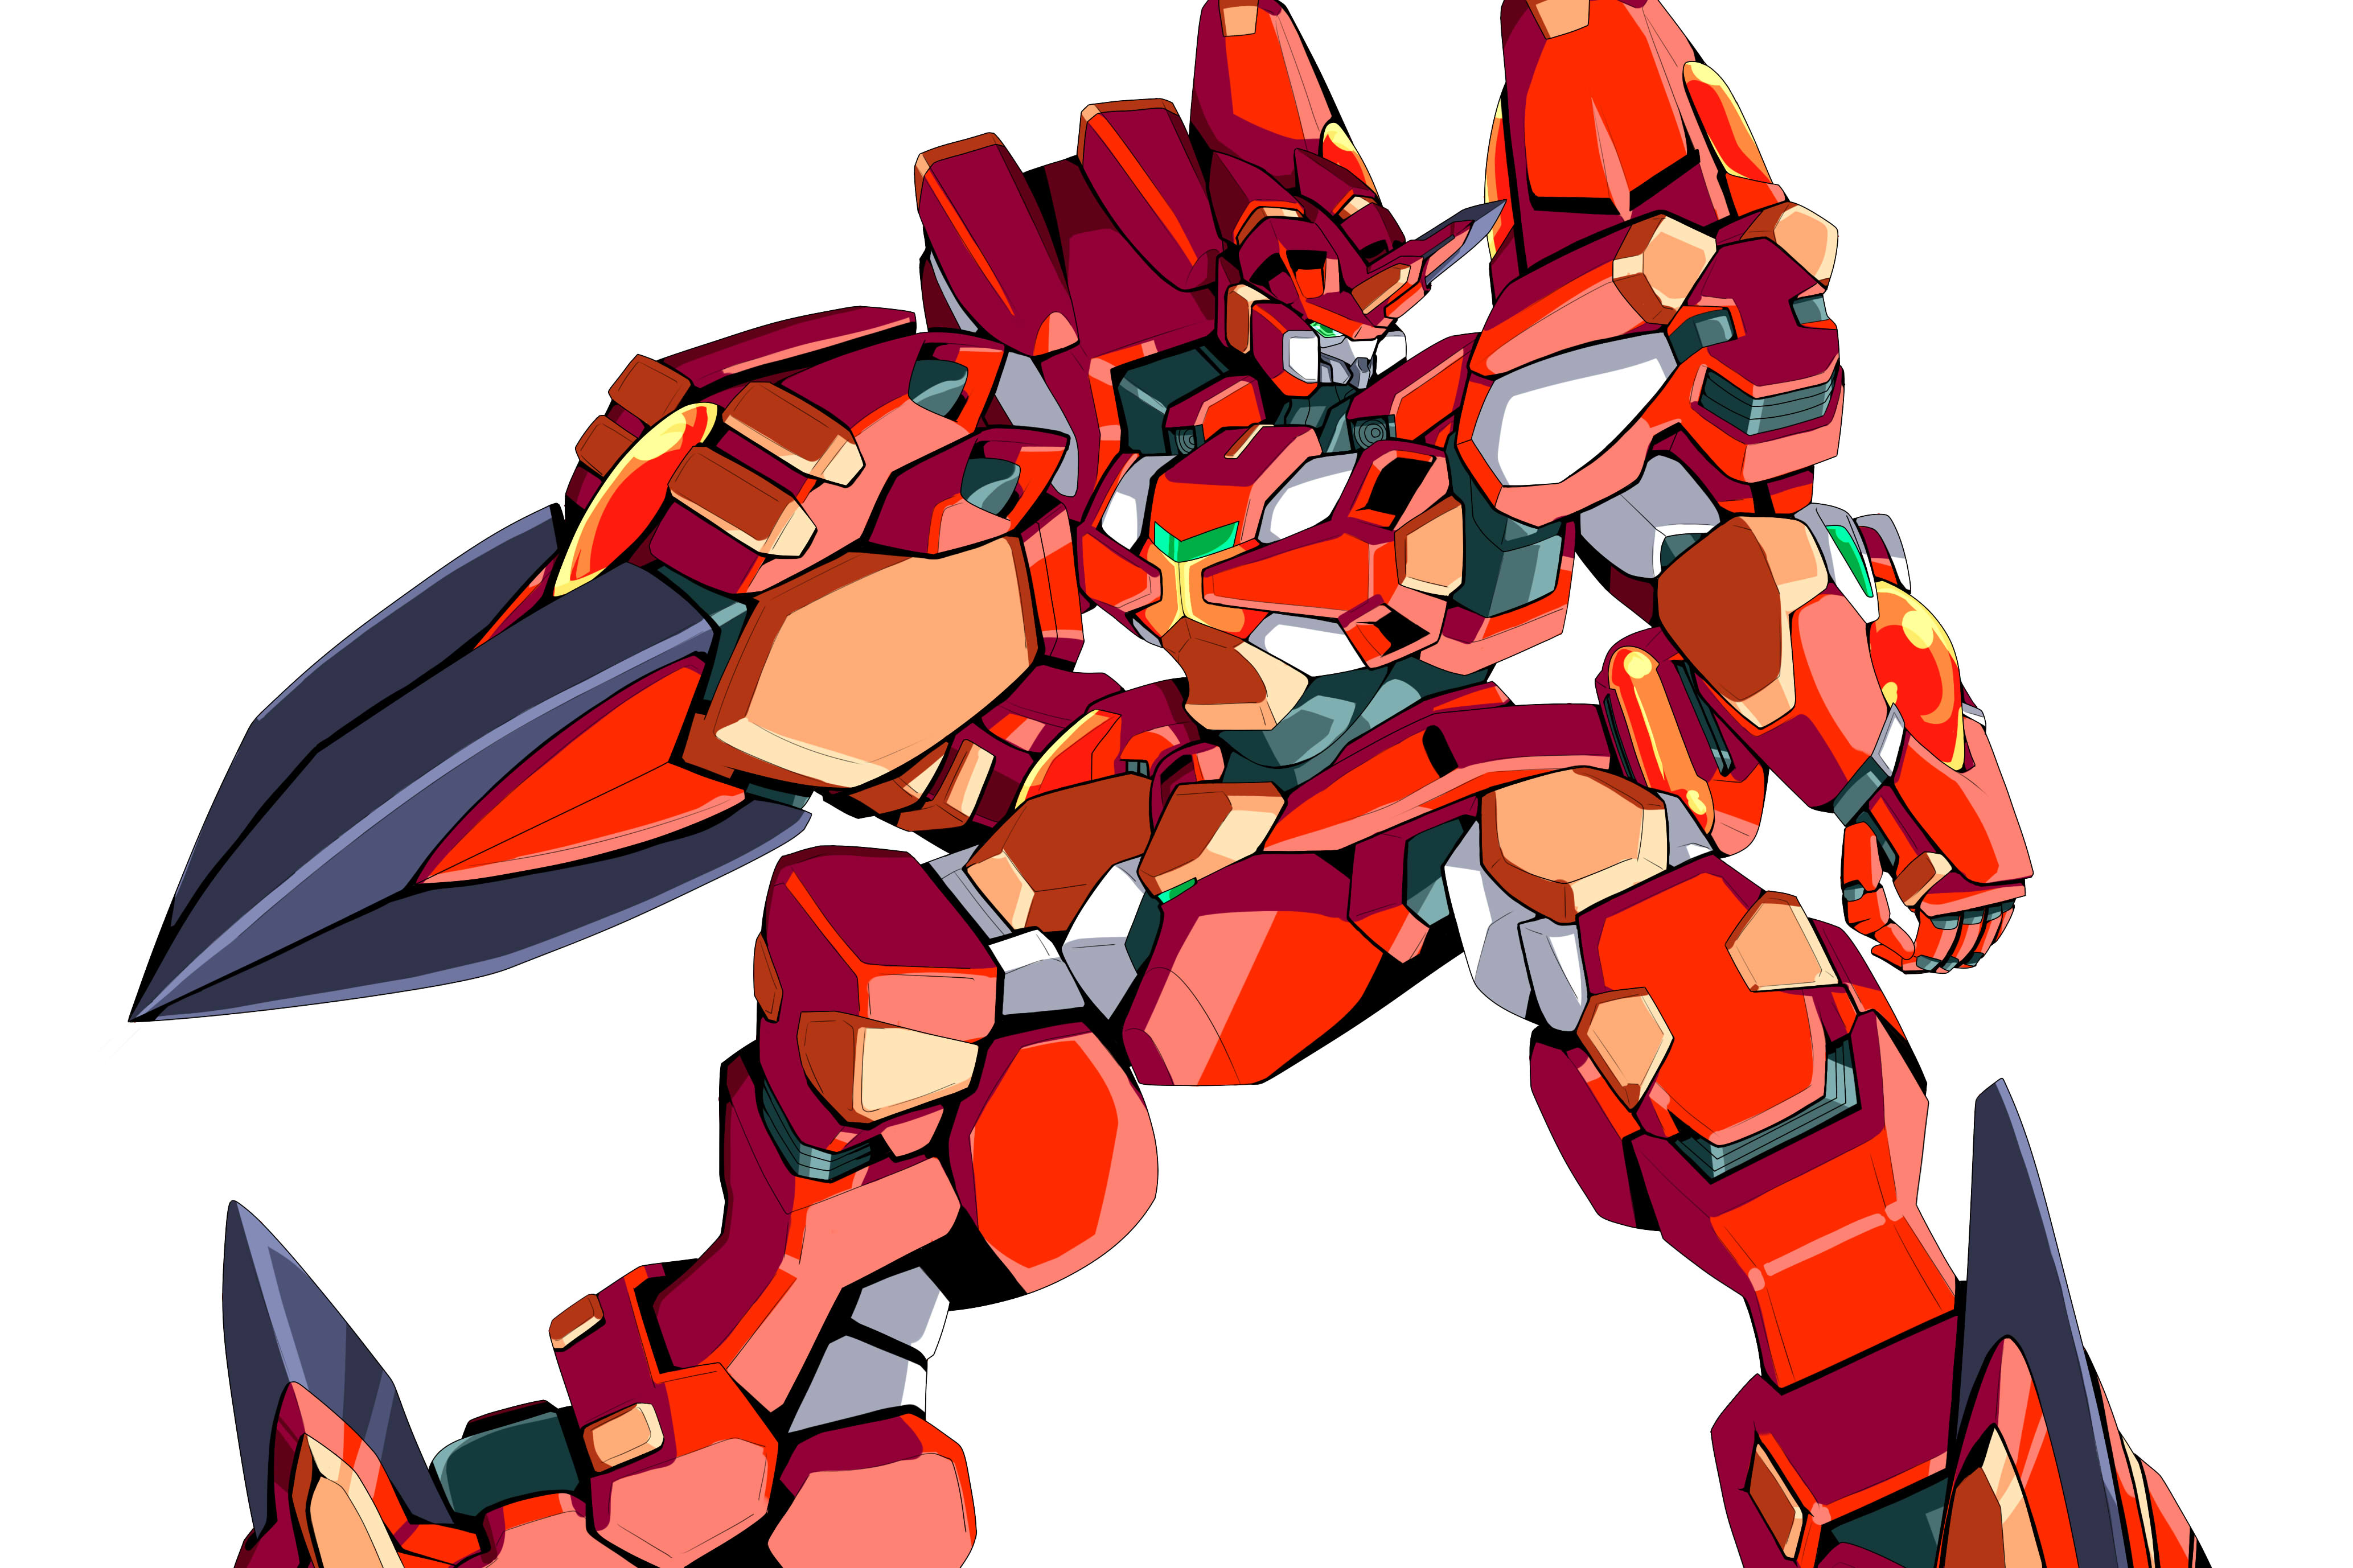 Anime 4133x2755 Excellence Striker anime mechs Super Robot Taisen artwork digital art fan art